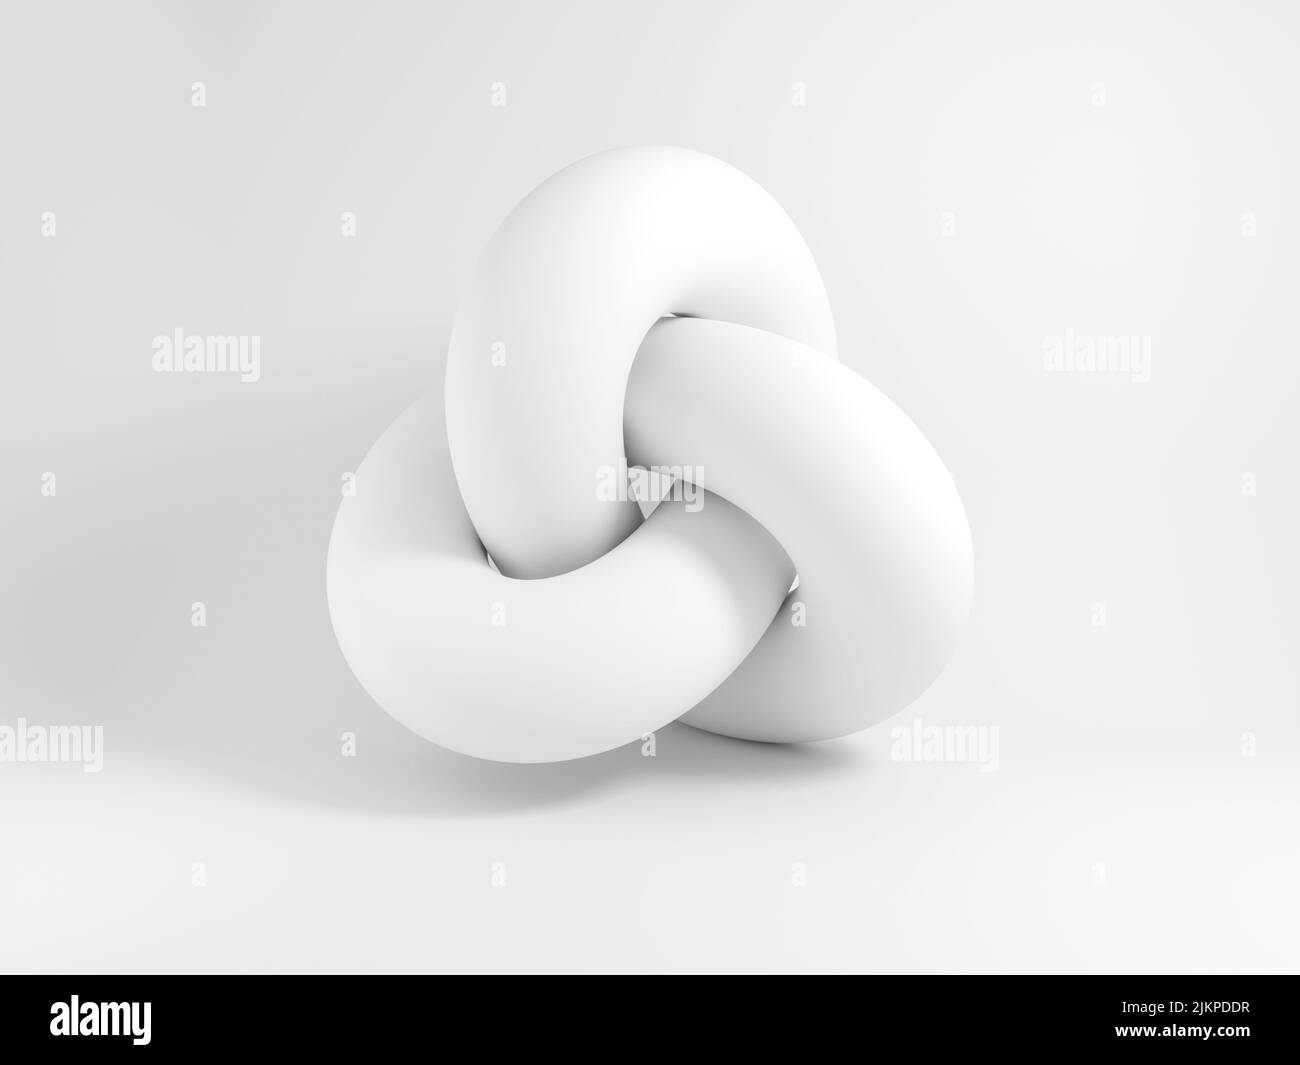 Forma geométrica blanca abstracta, nudo de toro, ilustración de representación en 3D Foto de stock